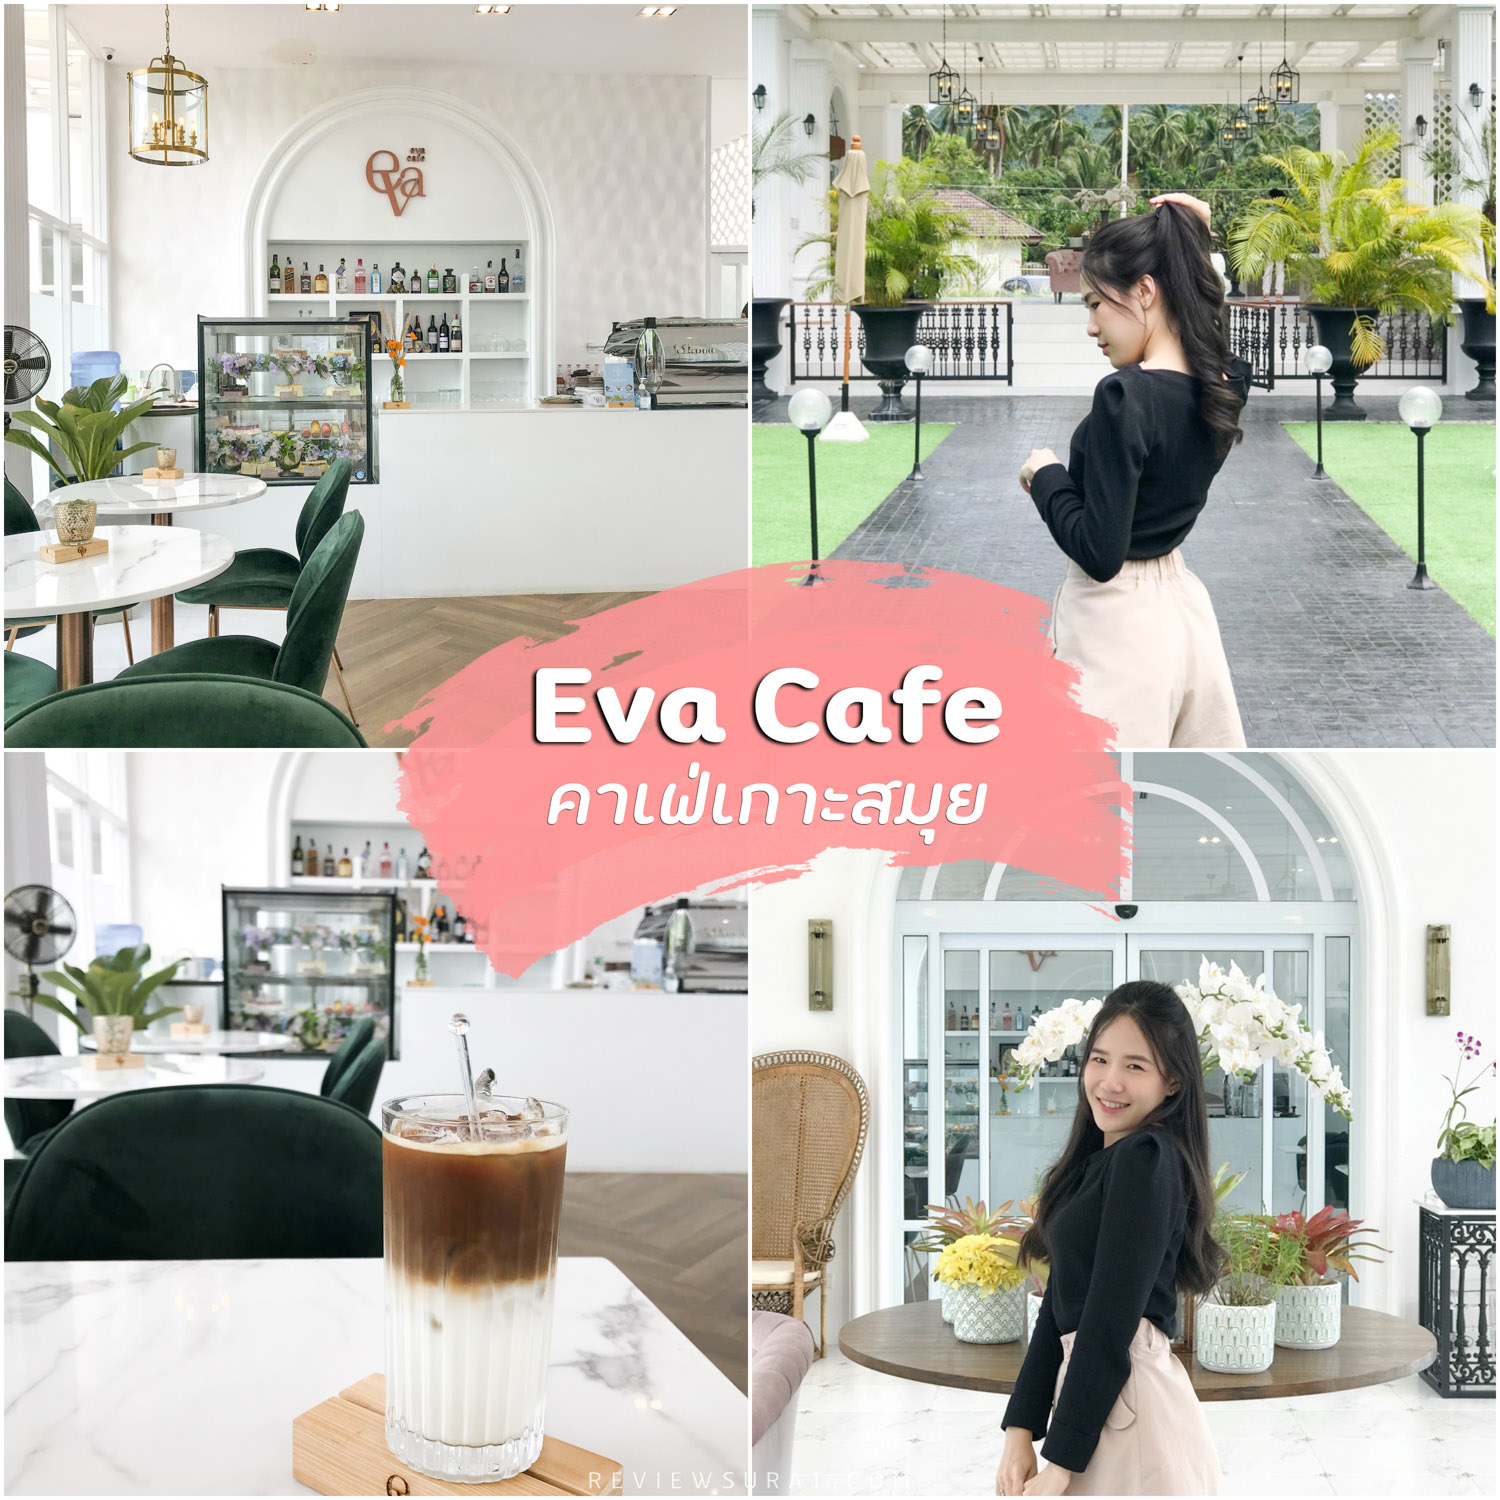 Eva Cafe คาเฟ่เกาะสมุยอาหารเด็ด เค้กก็อร่อย และเมนูเด็ดห้ามพลาดพิซซ่า